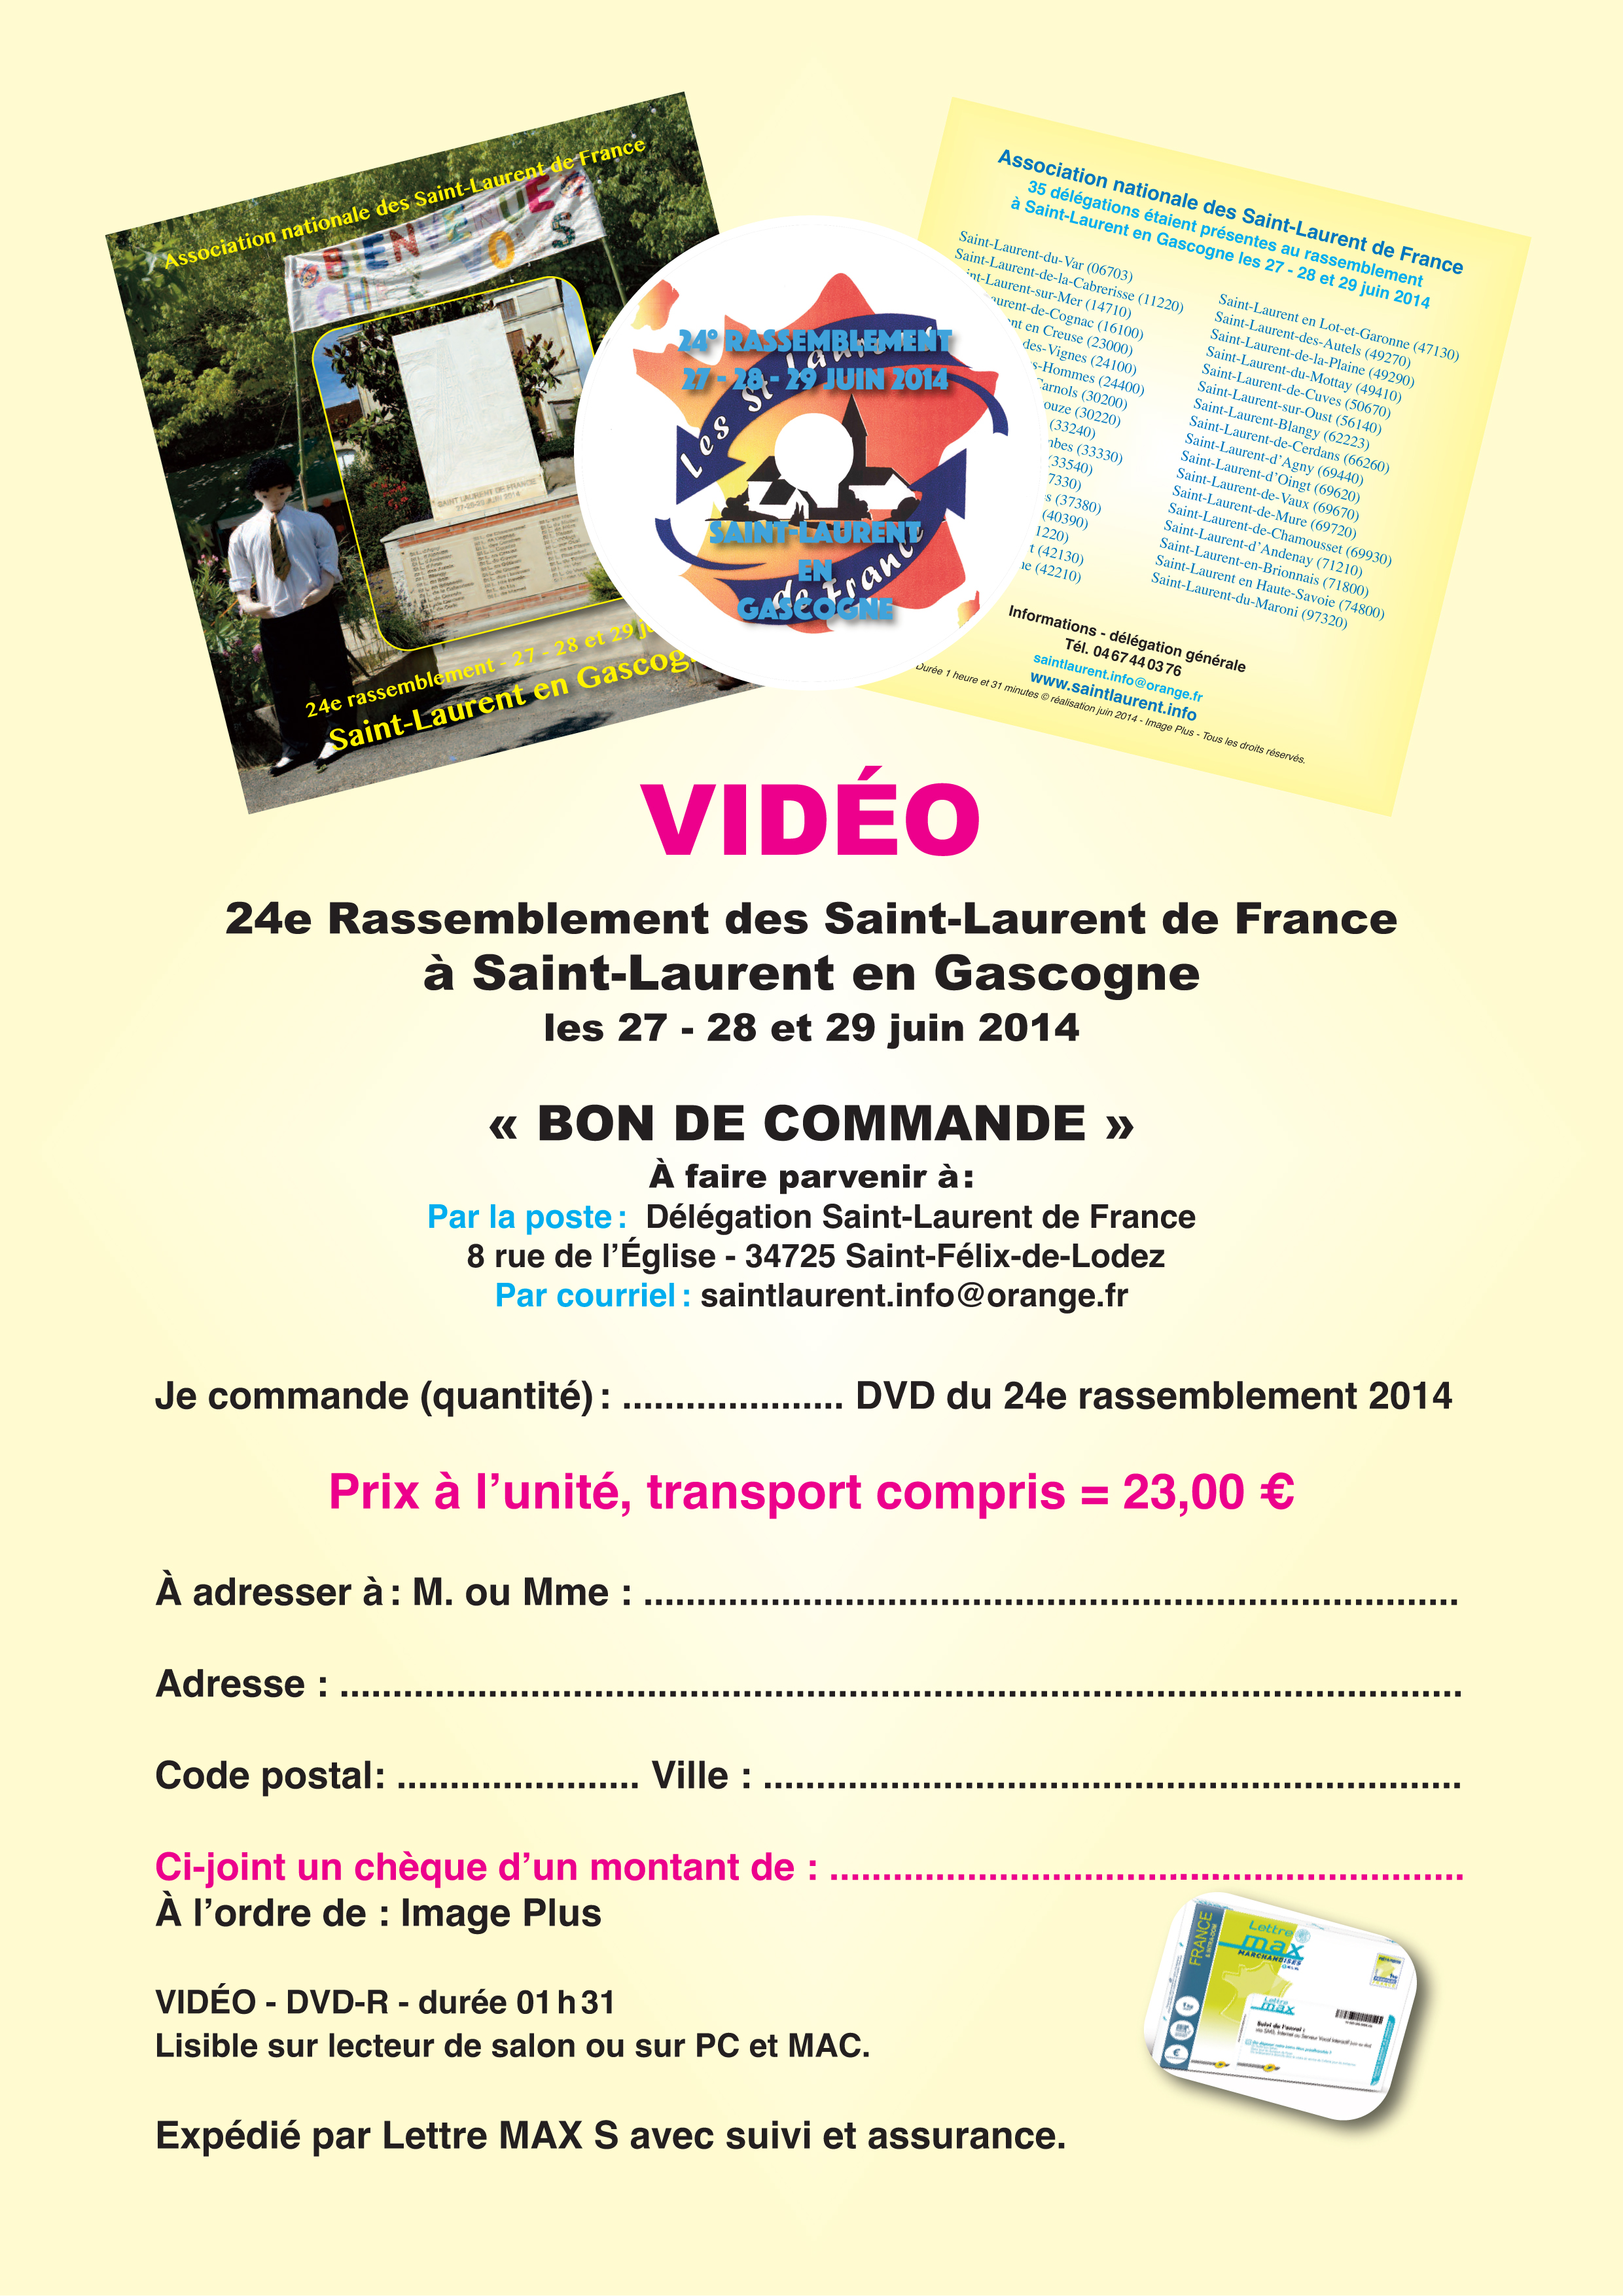 VIDEO du 24° rassemblement à Saint-Laurent en Gascogne